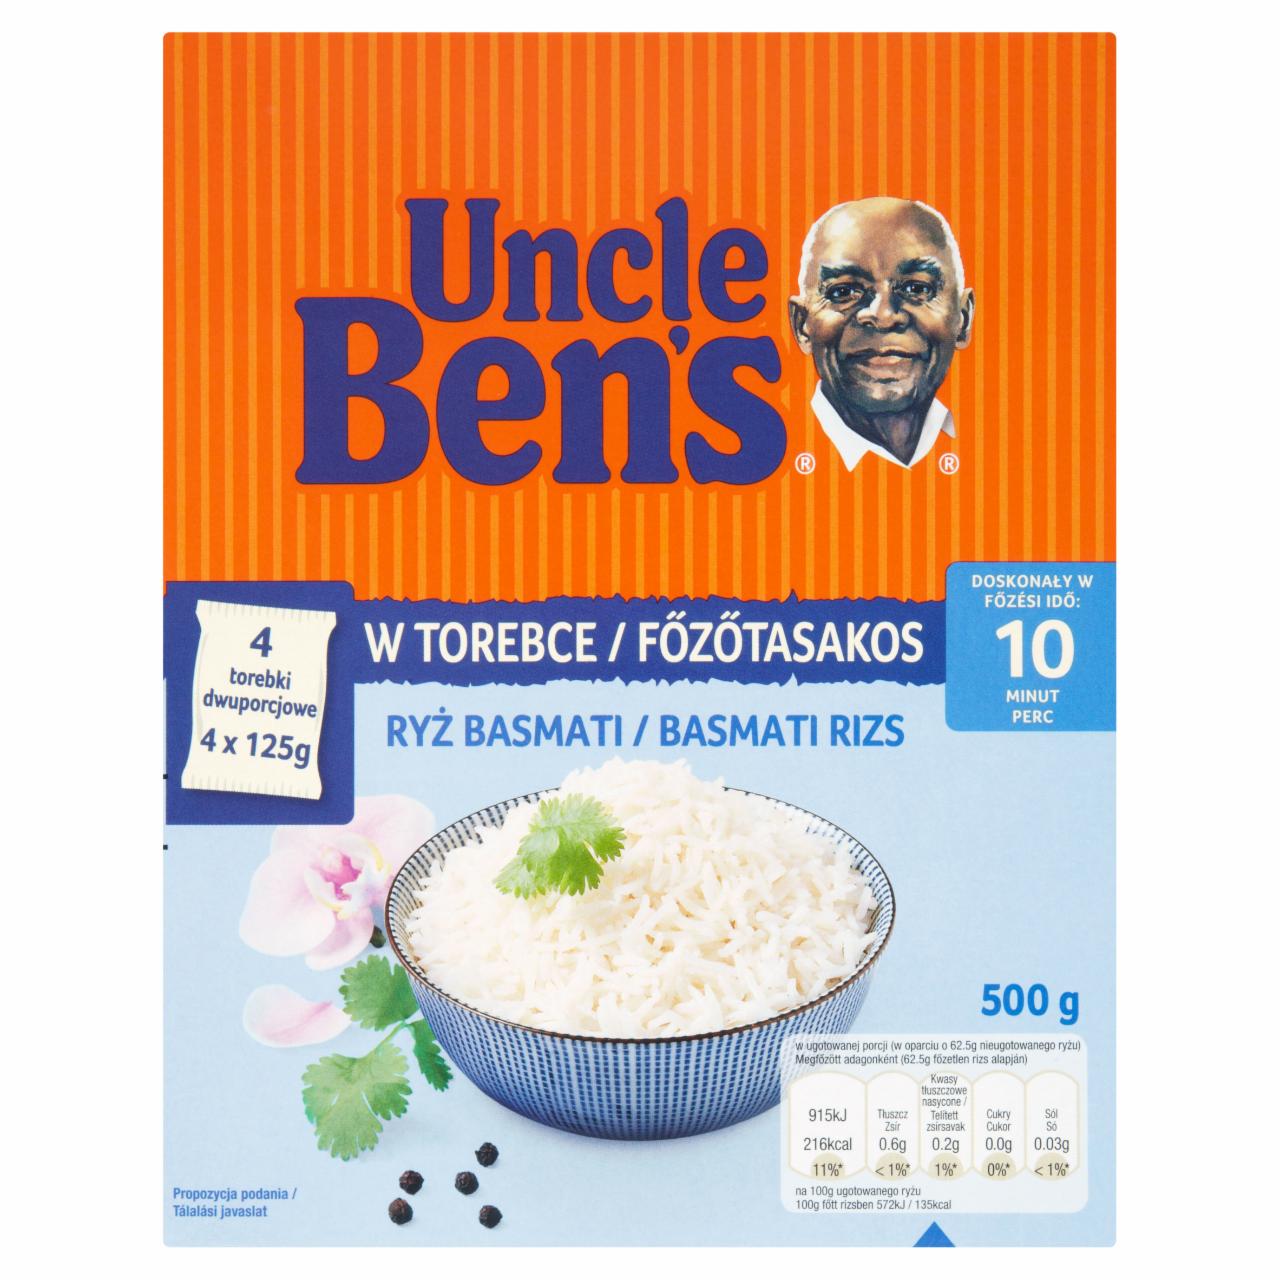 Képek - Uncle Ben's főzőtasakos basmati rizs 500 g